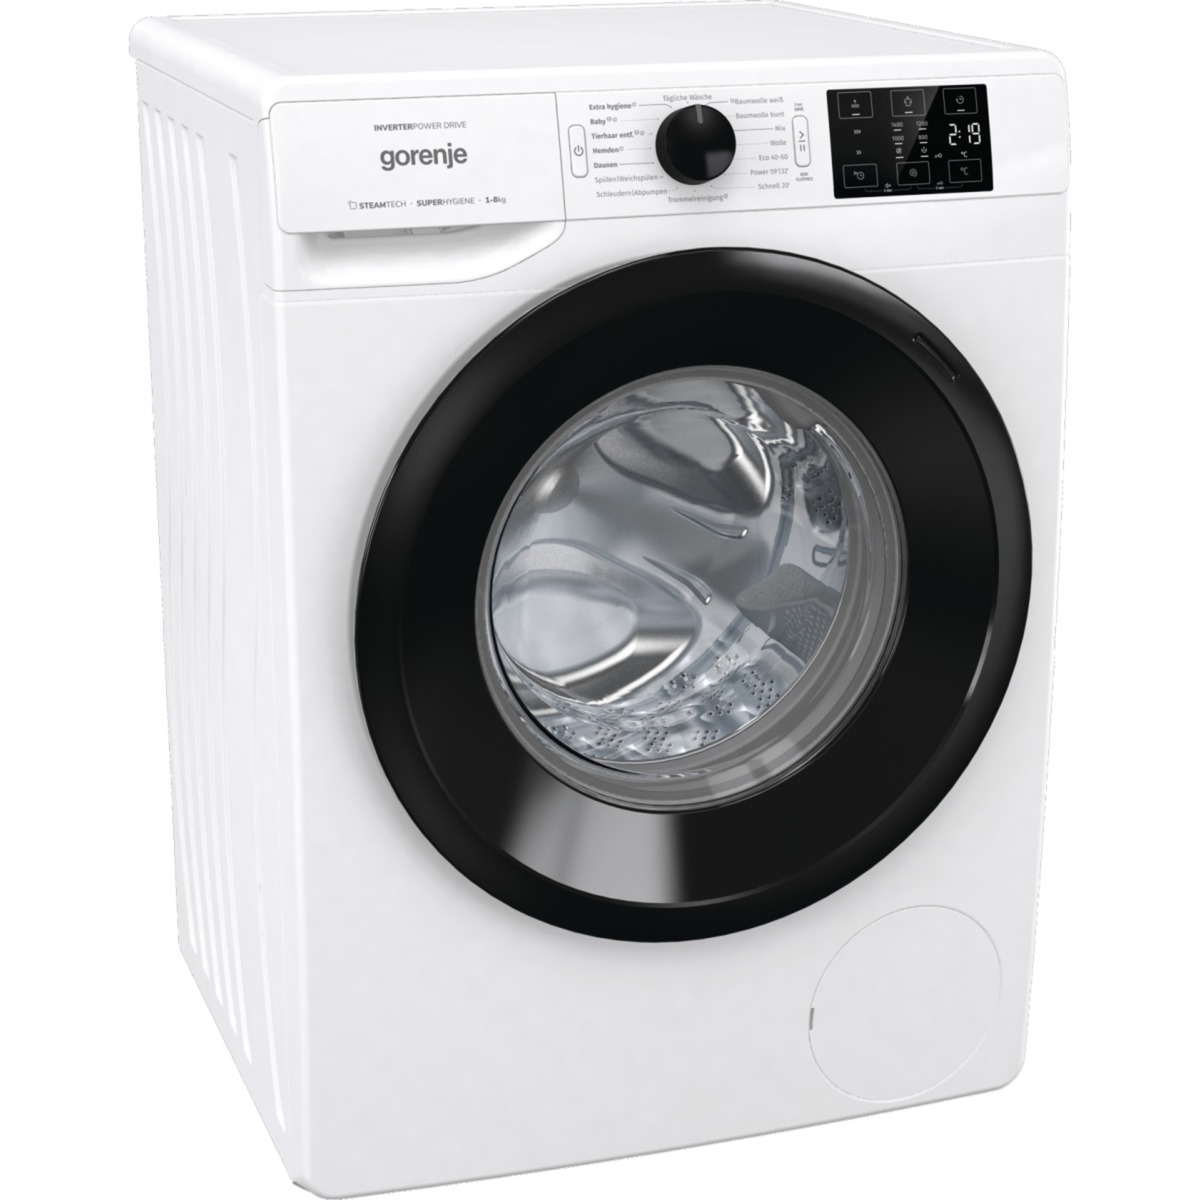 WNEI84APS, Waschmaschine von Gorenje